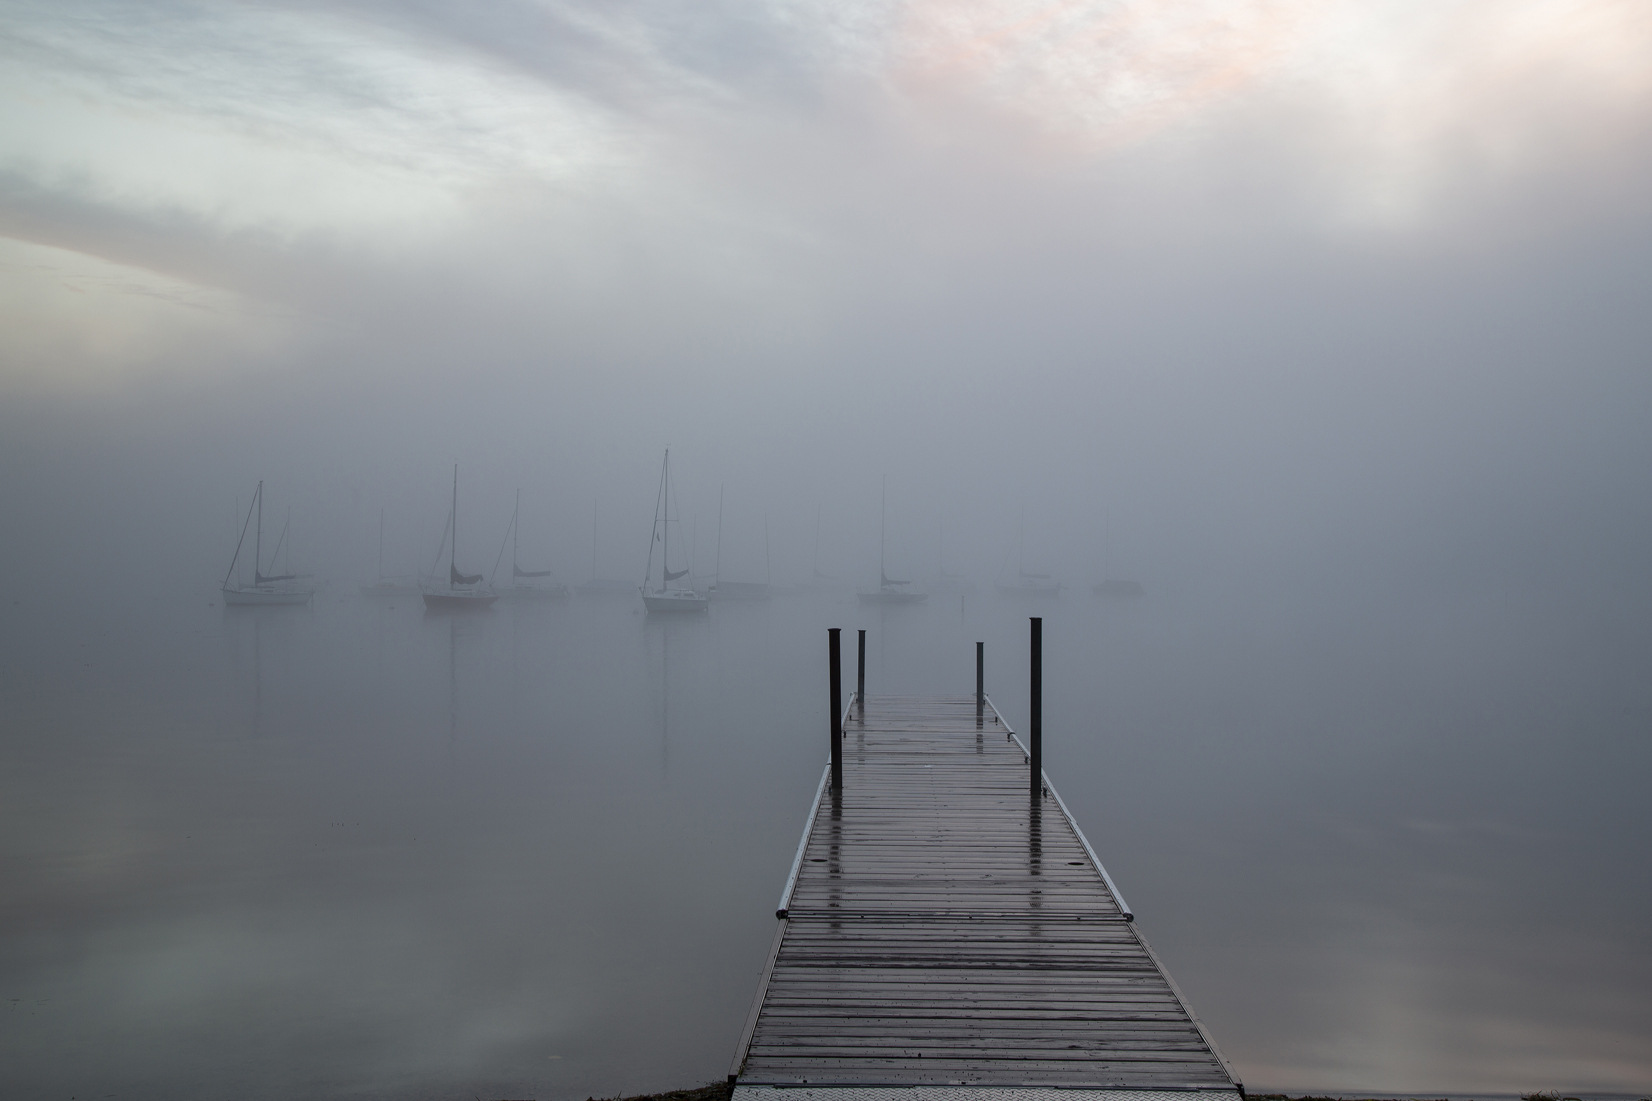 Sailboats in Fog - Ron Johnson - MNPC